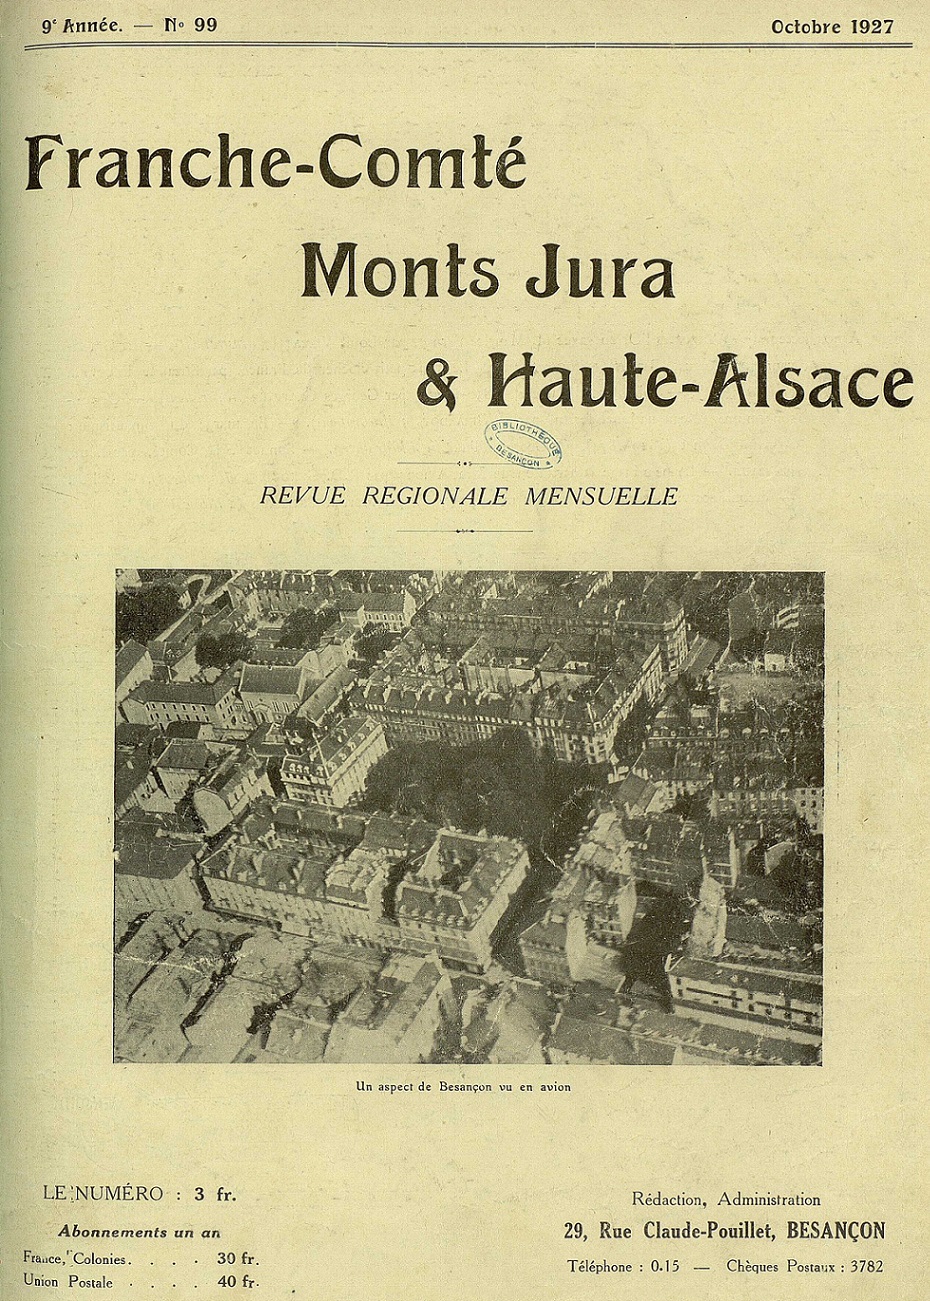 Photo (Bibliothèque municipale (Besançon)) de : Franche-Comté, Monts Jura & Haute-Alsace. Besançon, 1927-1932. ISSN 2017-0629.